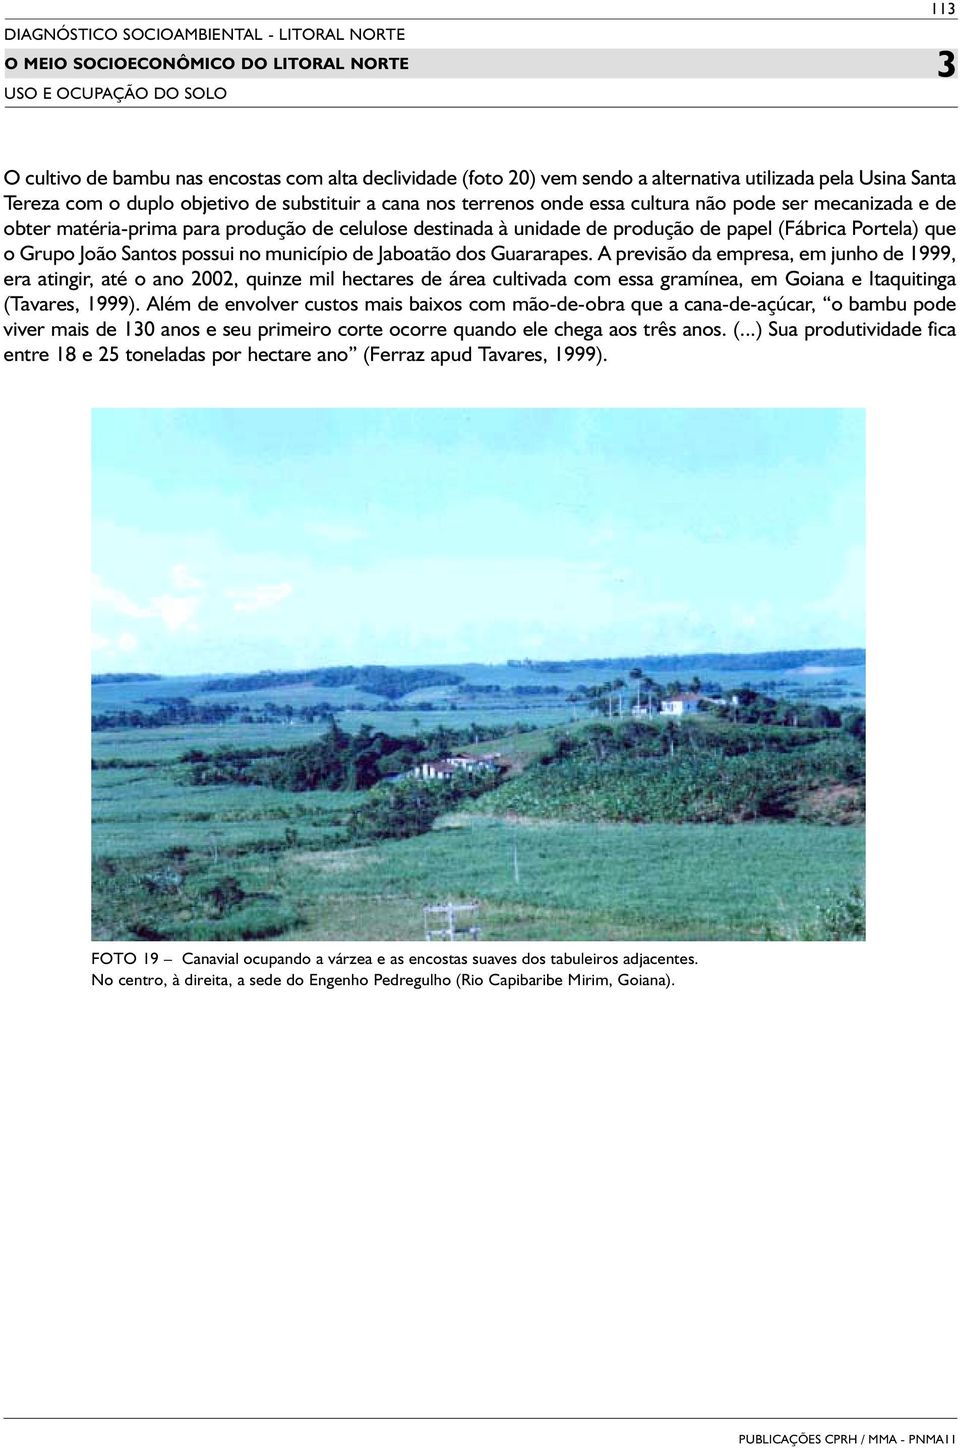 Guararapes. A previsão da empresa, em junho de 1999, era atingir, até o ano 2002, quinze mil hectares de área cultivada com essa gramínea, em Goiana e Itaquitinga (Tavares, 1999).